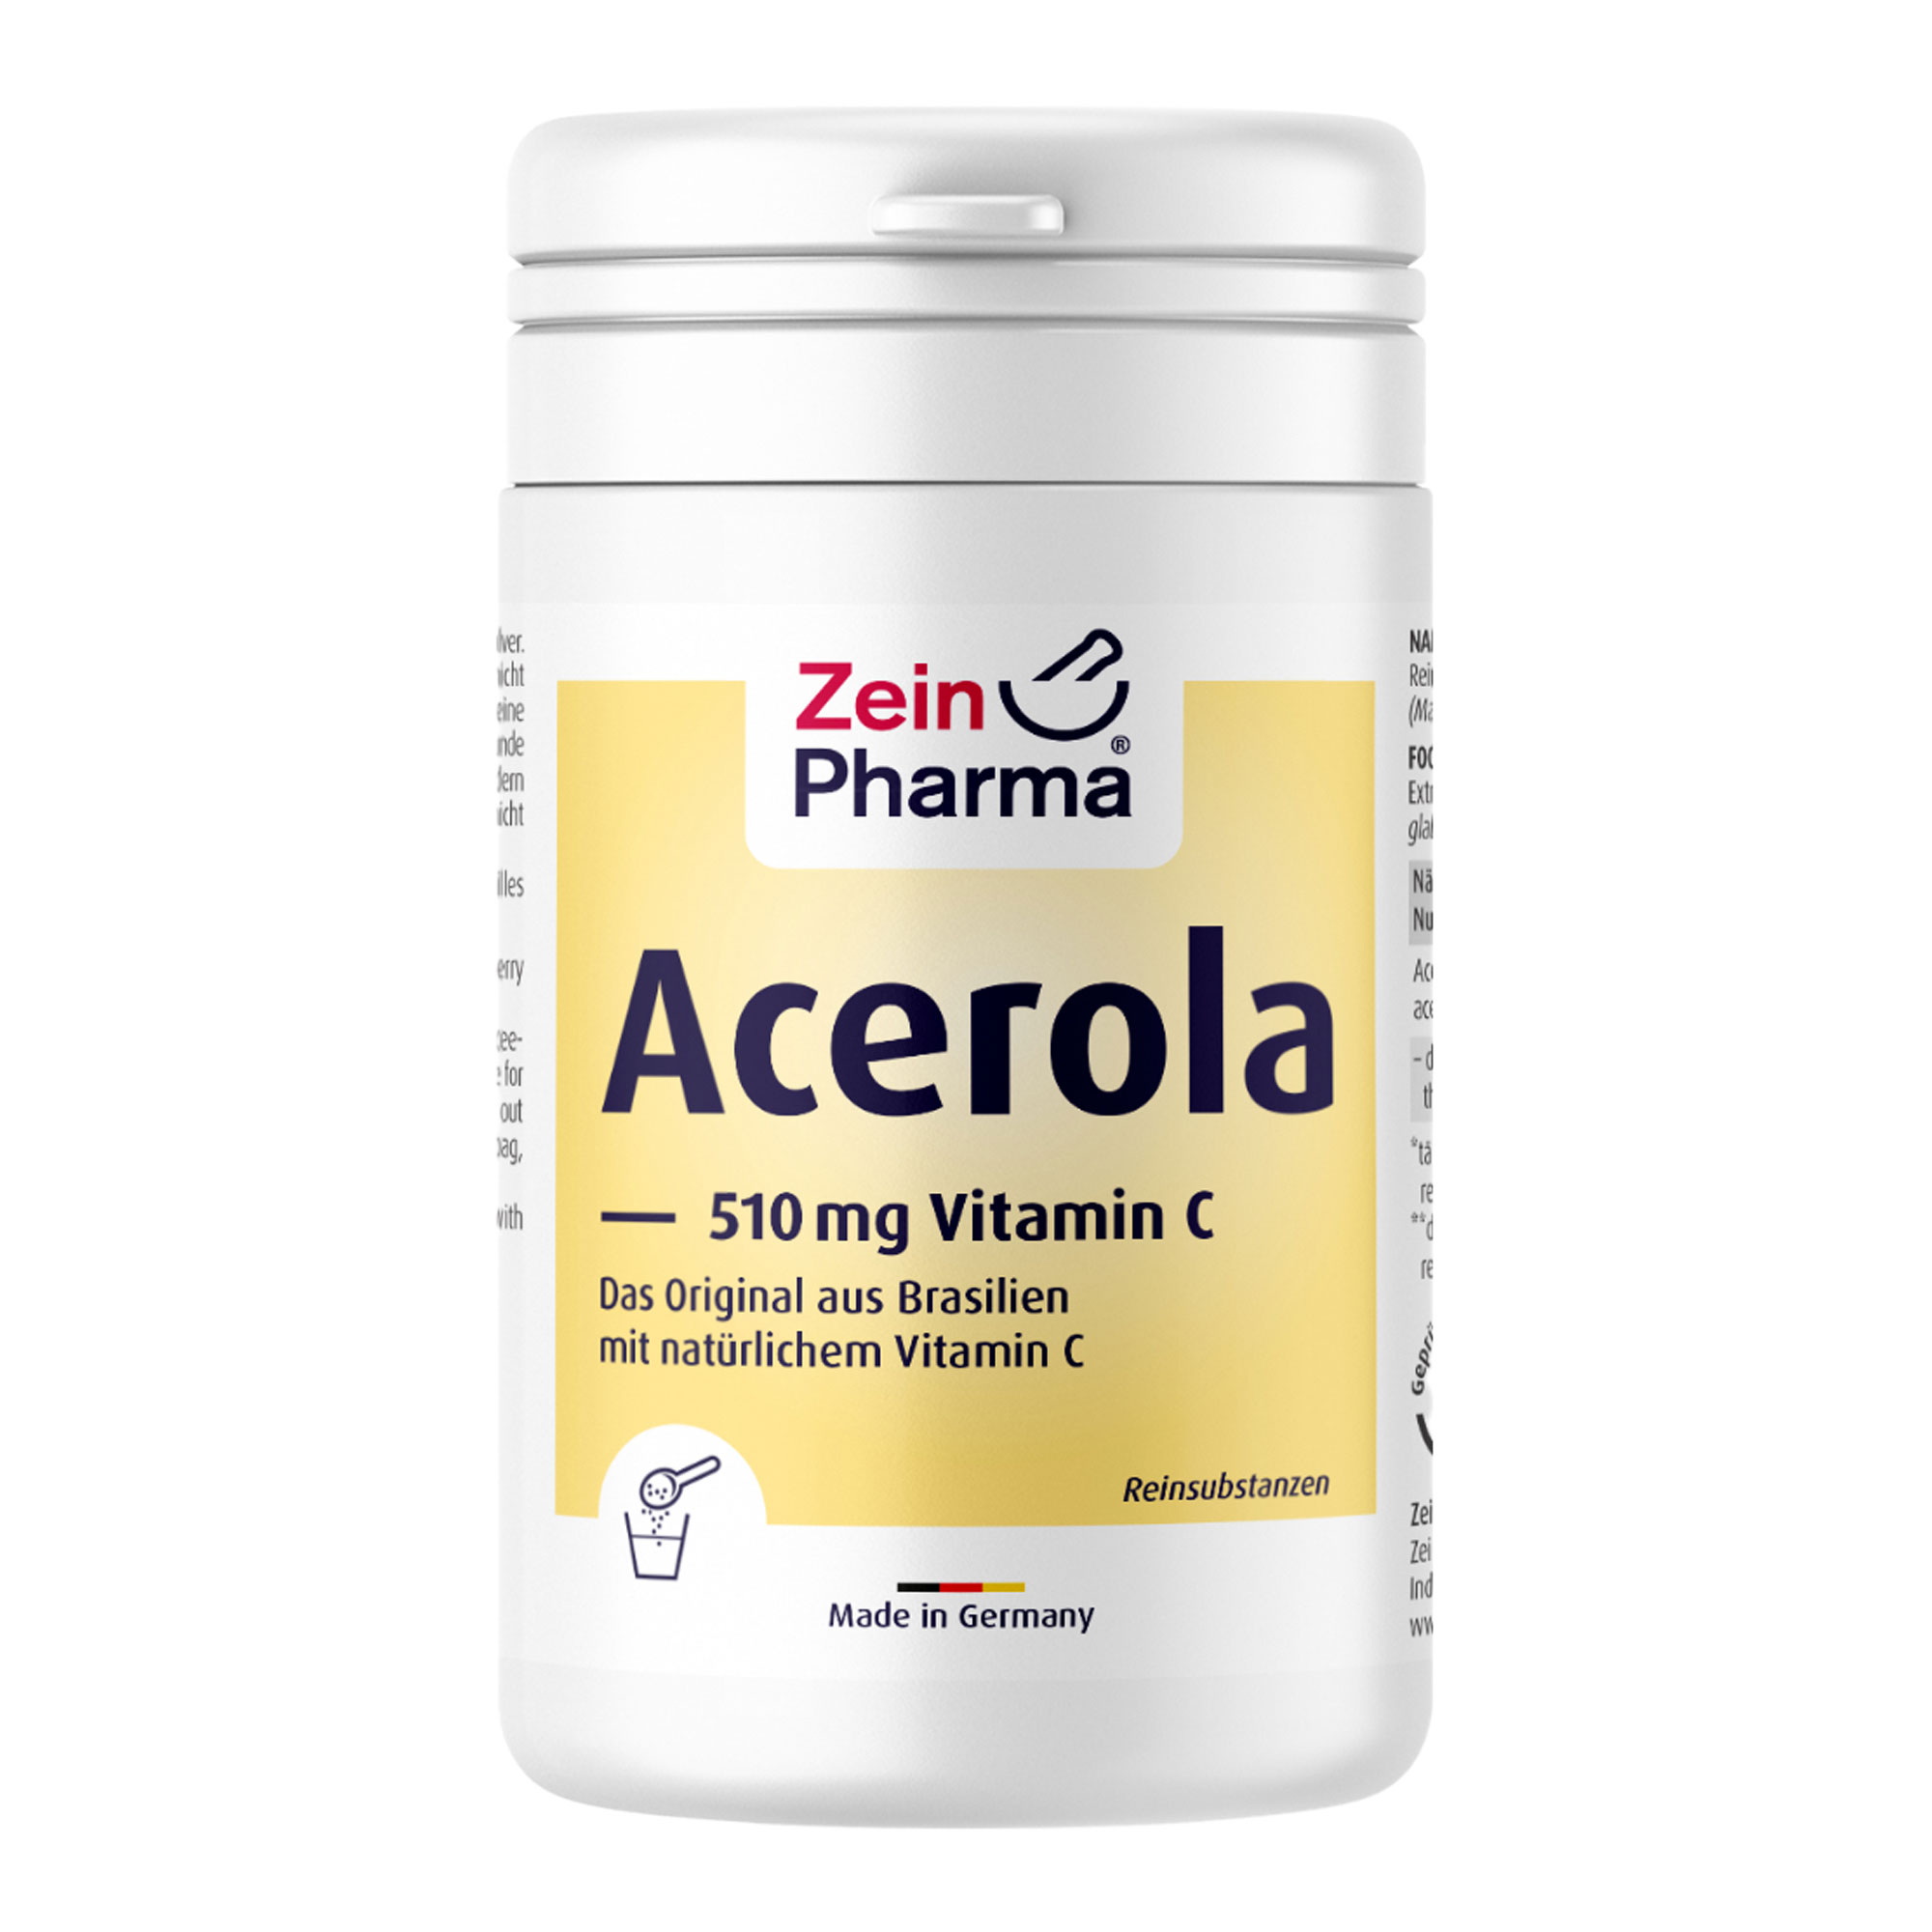 Nahrungsergänzungsmittel mit Acerola und natürlichem Vitamin C.